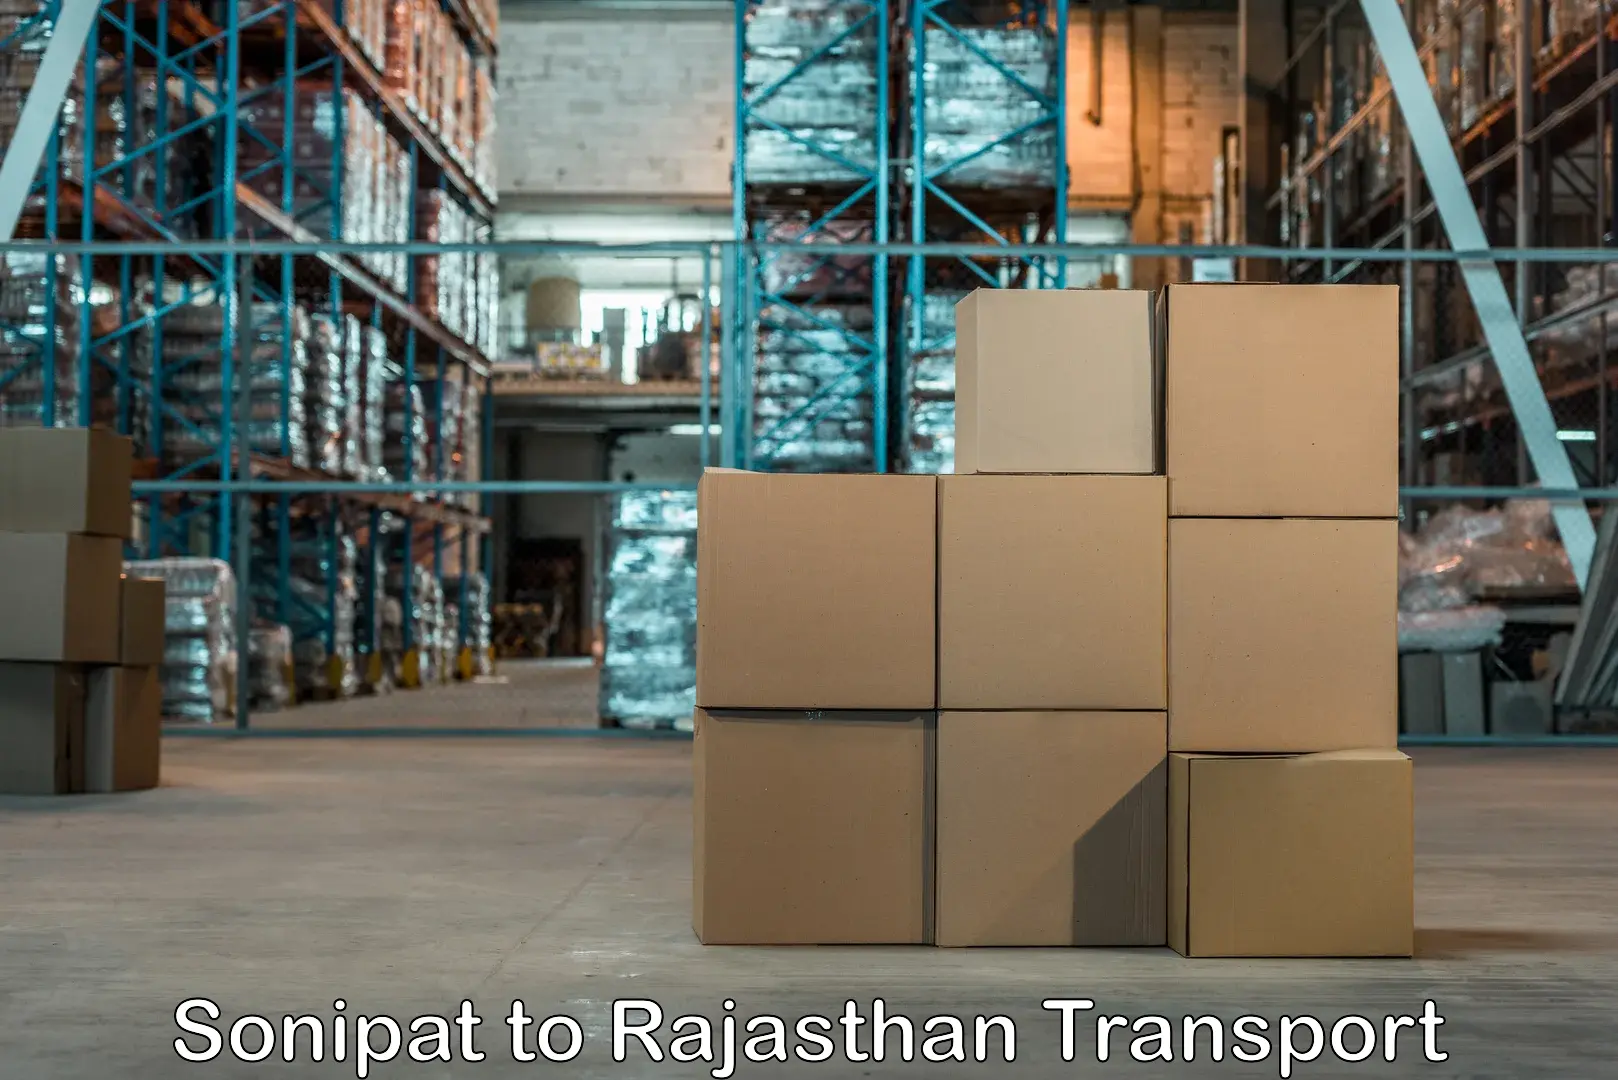 Online transport service Sonipat to Pratapgarh Rajasthan